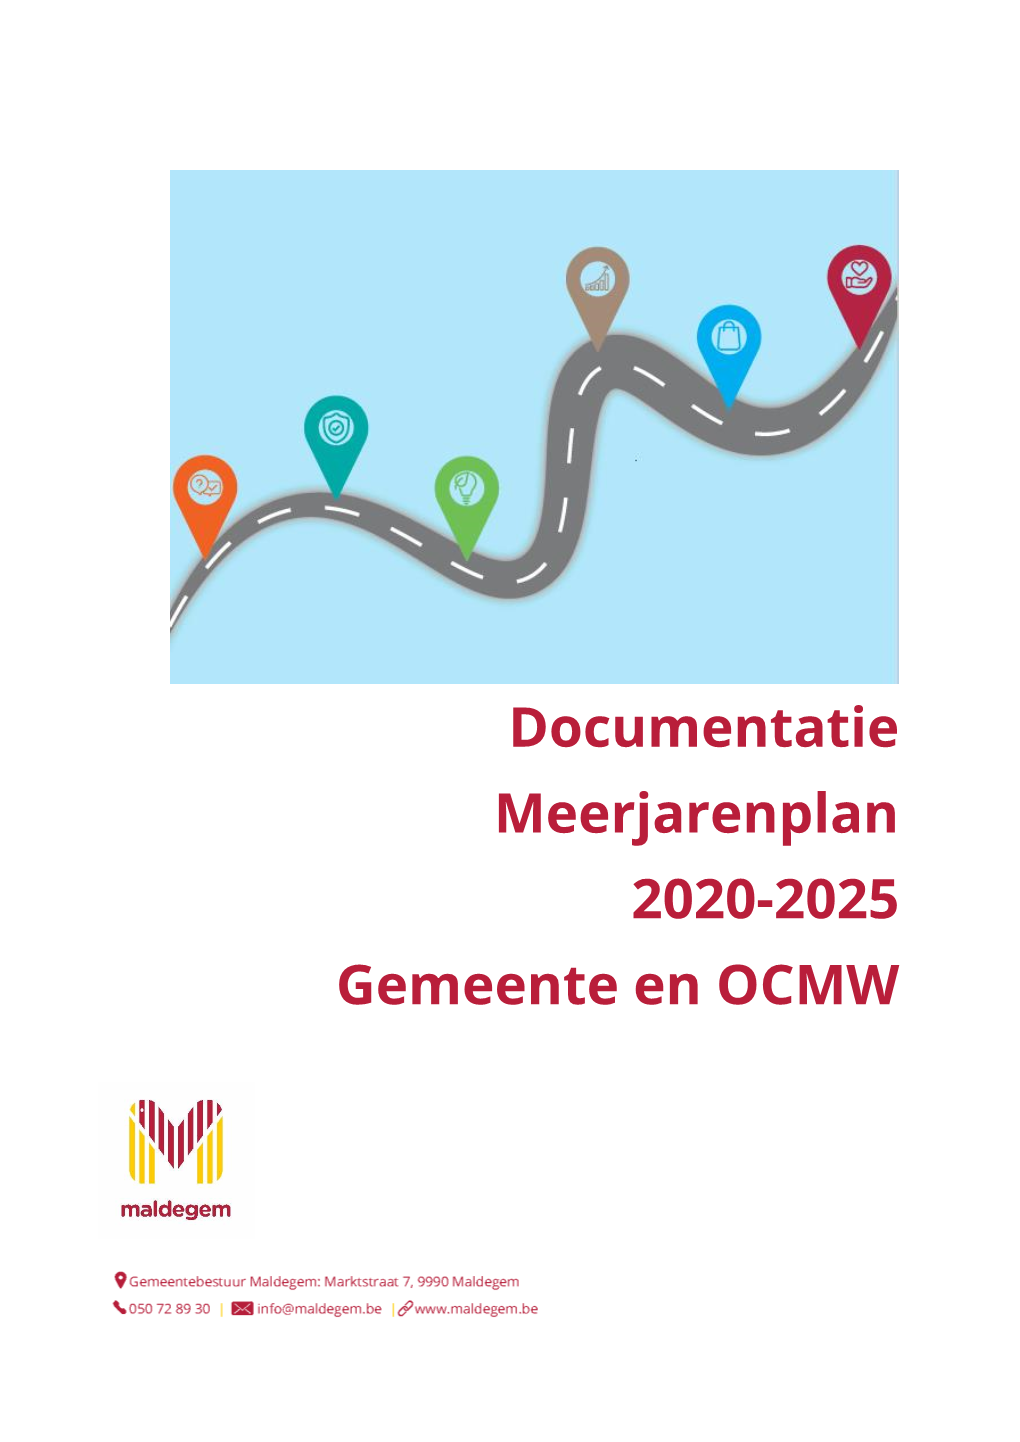 Documentatie Meerjarenplan 2020-2025 Gemeente En OCMW